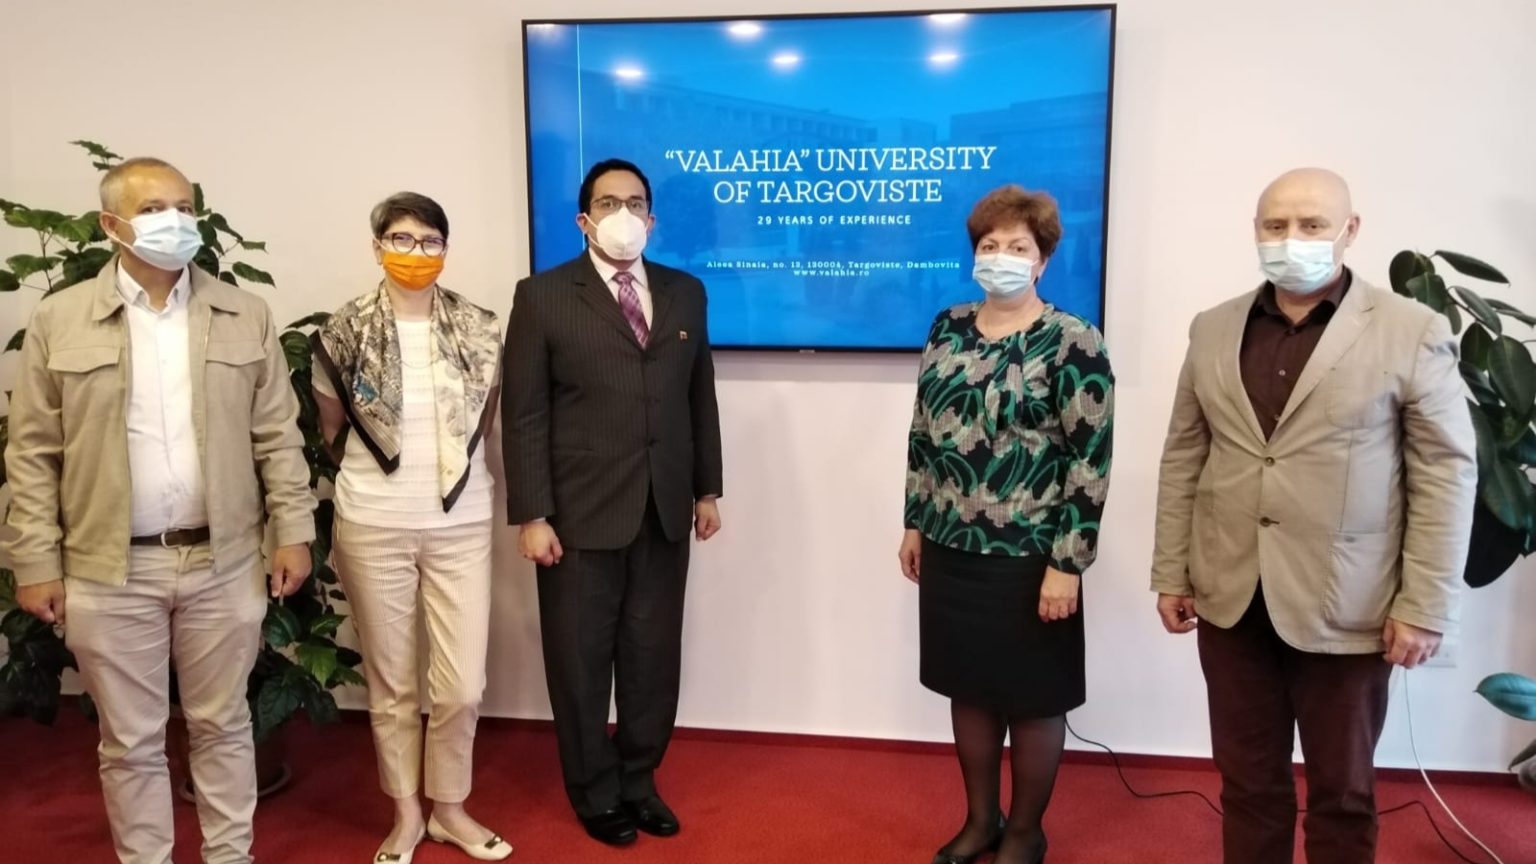 Avanza programa de intercambios académicos entre Venezuela y la Universidad rumana Valahia de Târgoviște